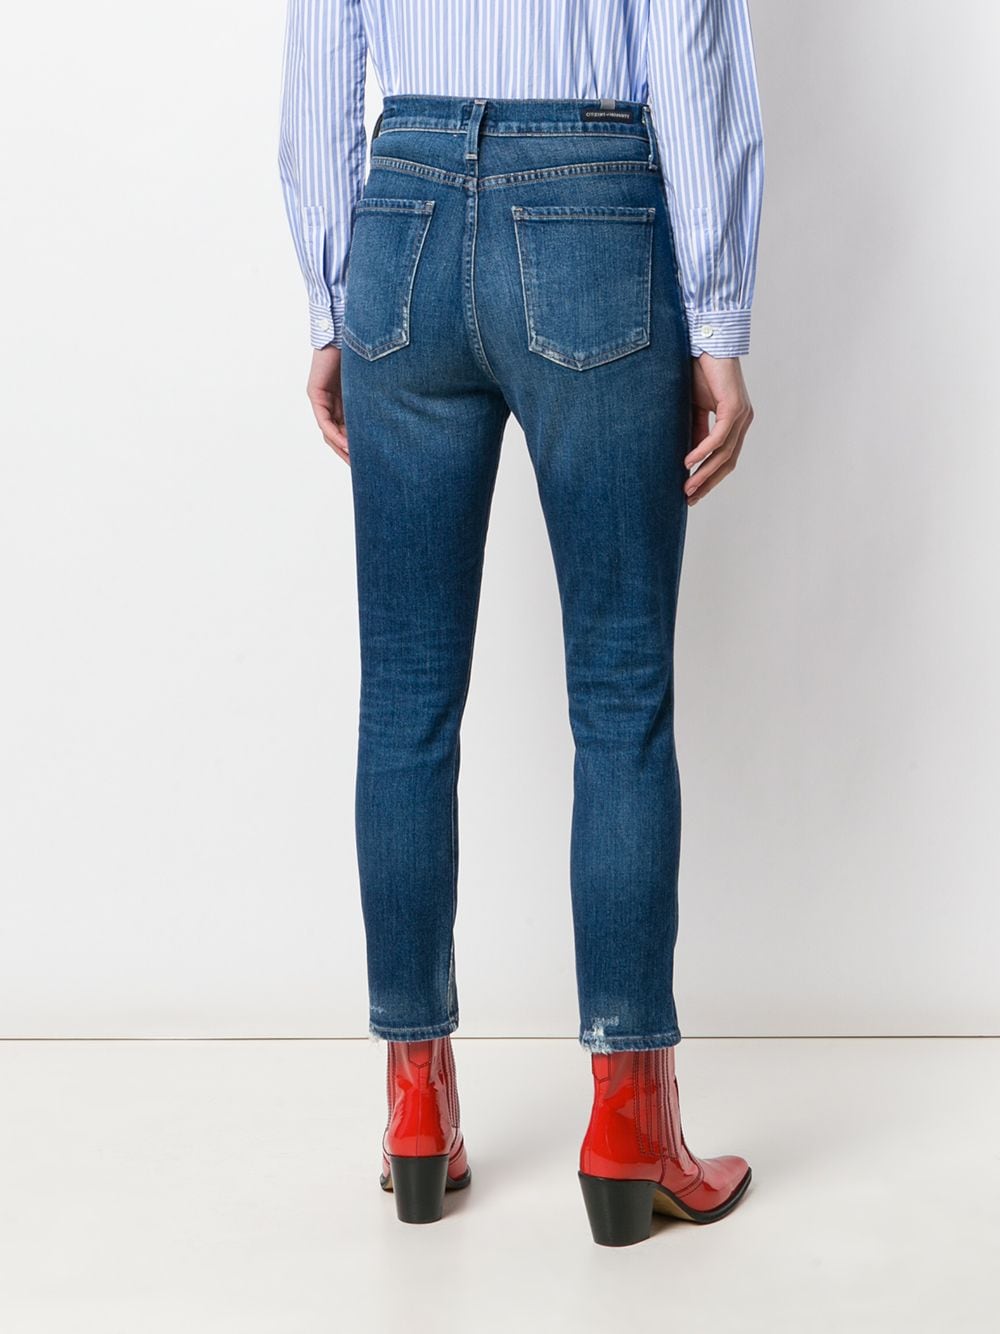 фото Citizens of humanity джинсы скинни с завышенной талией